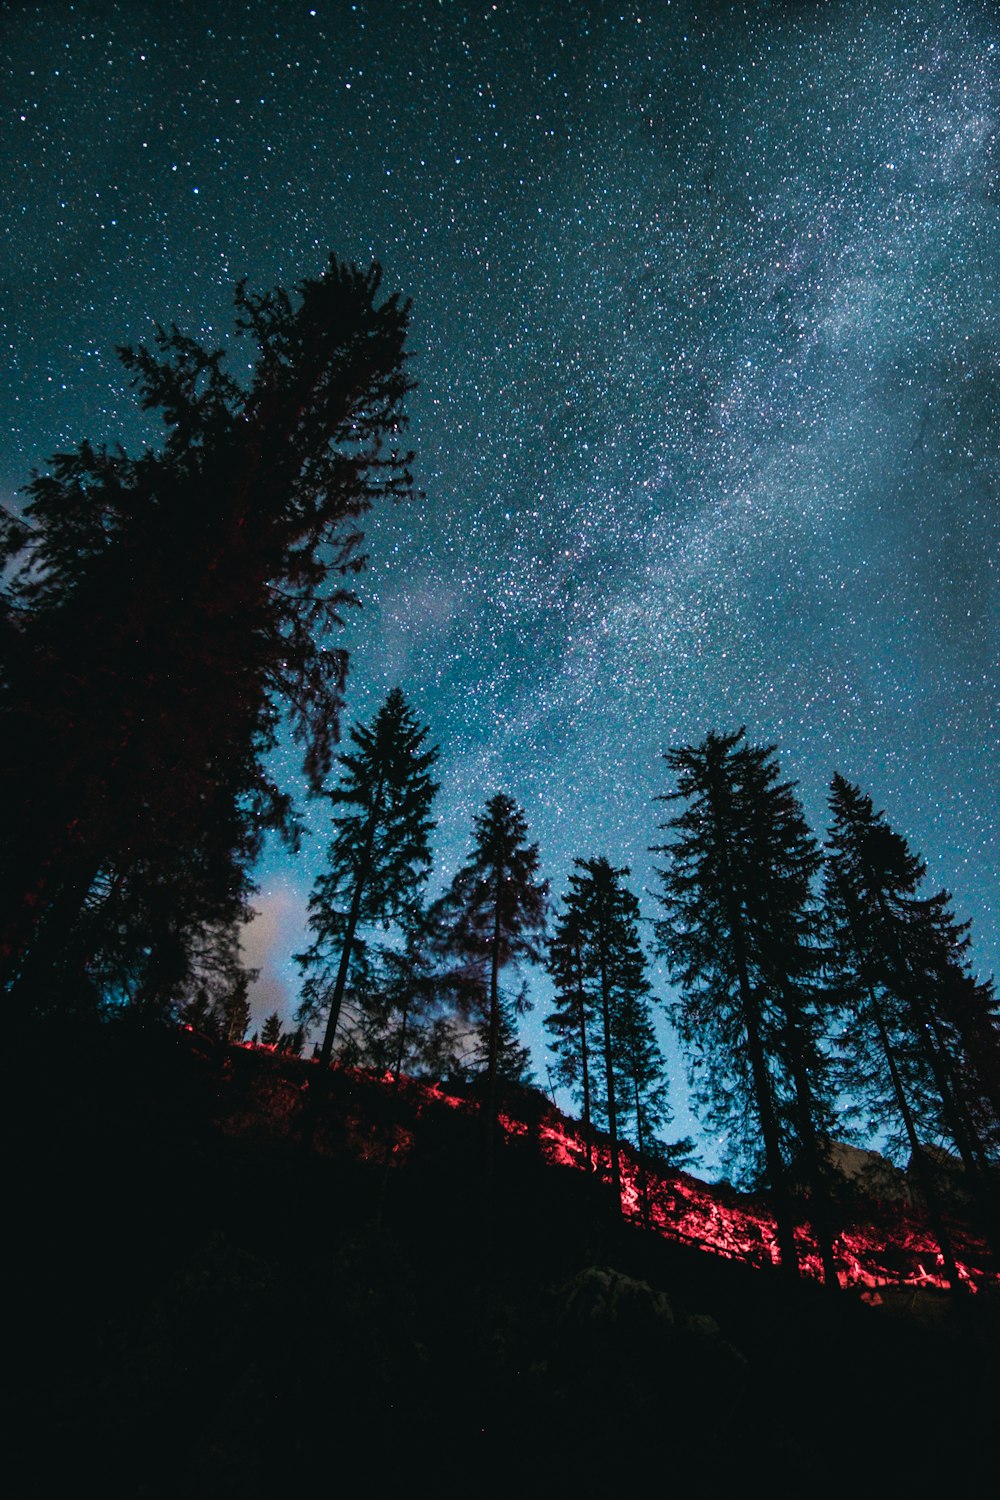 silueta de árboles bajo la noche estrellada